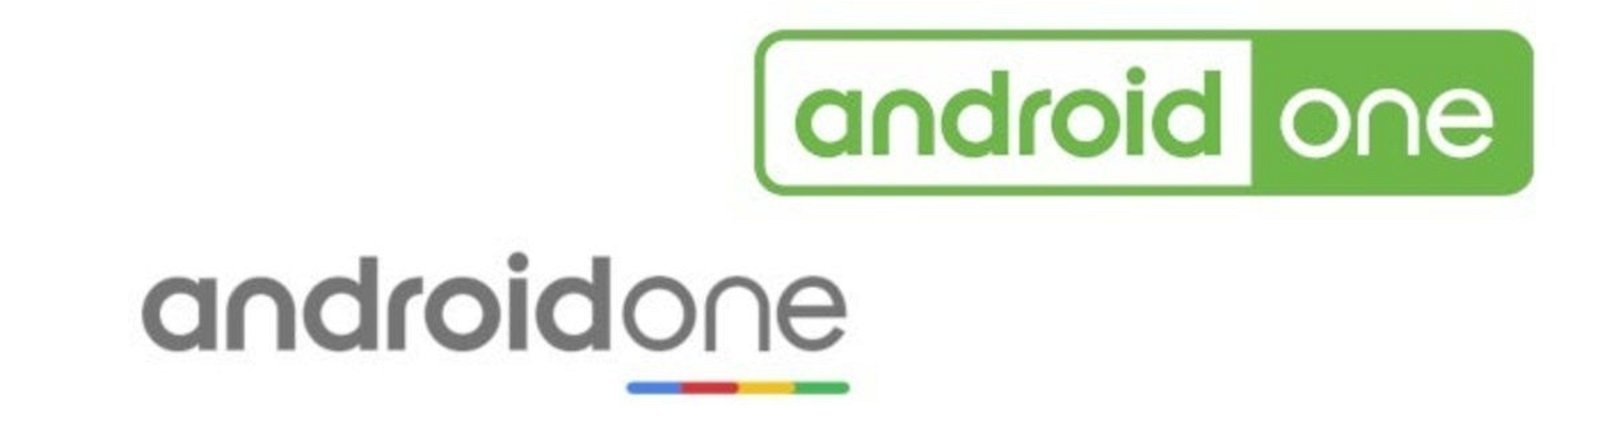 Android One ha cambiado su logo